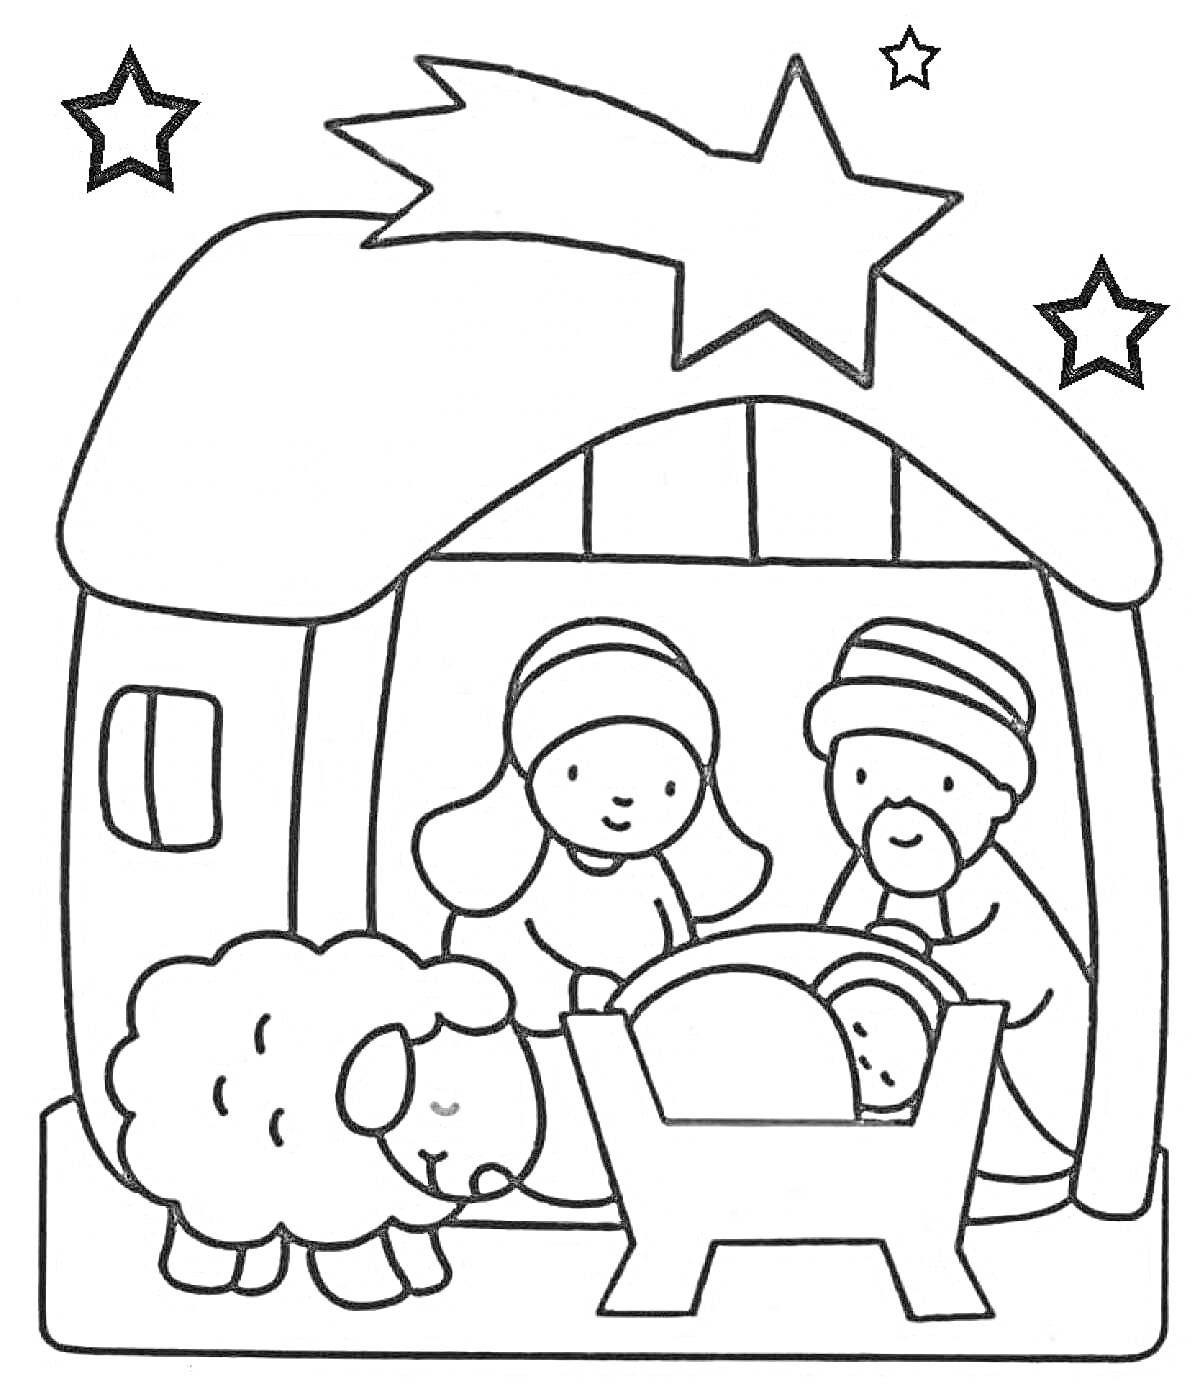 Сцена Рождества с младенцем Иисусом, его родителями, овечкой, хлевом и звездой